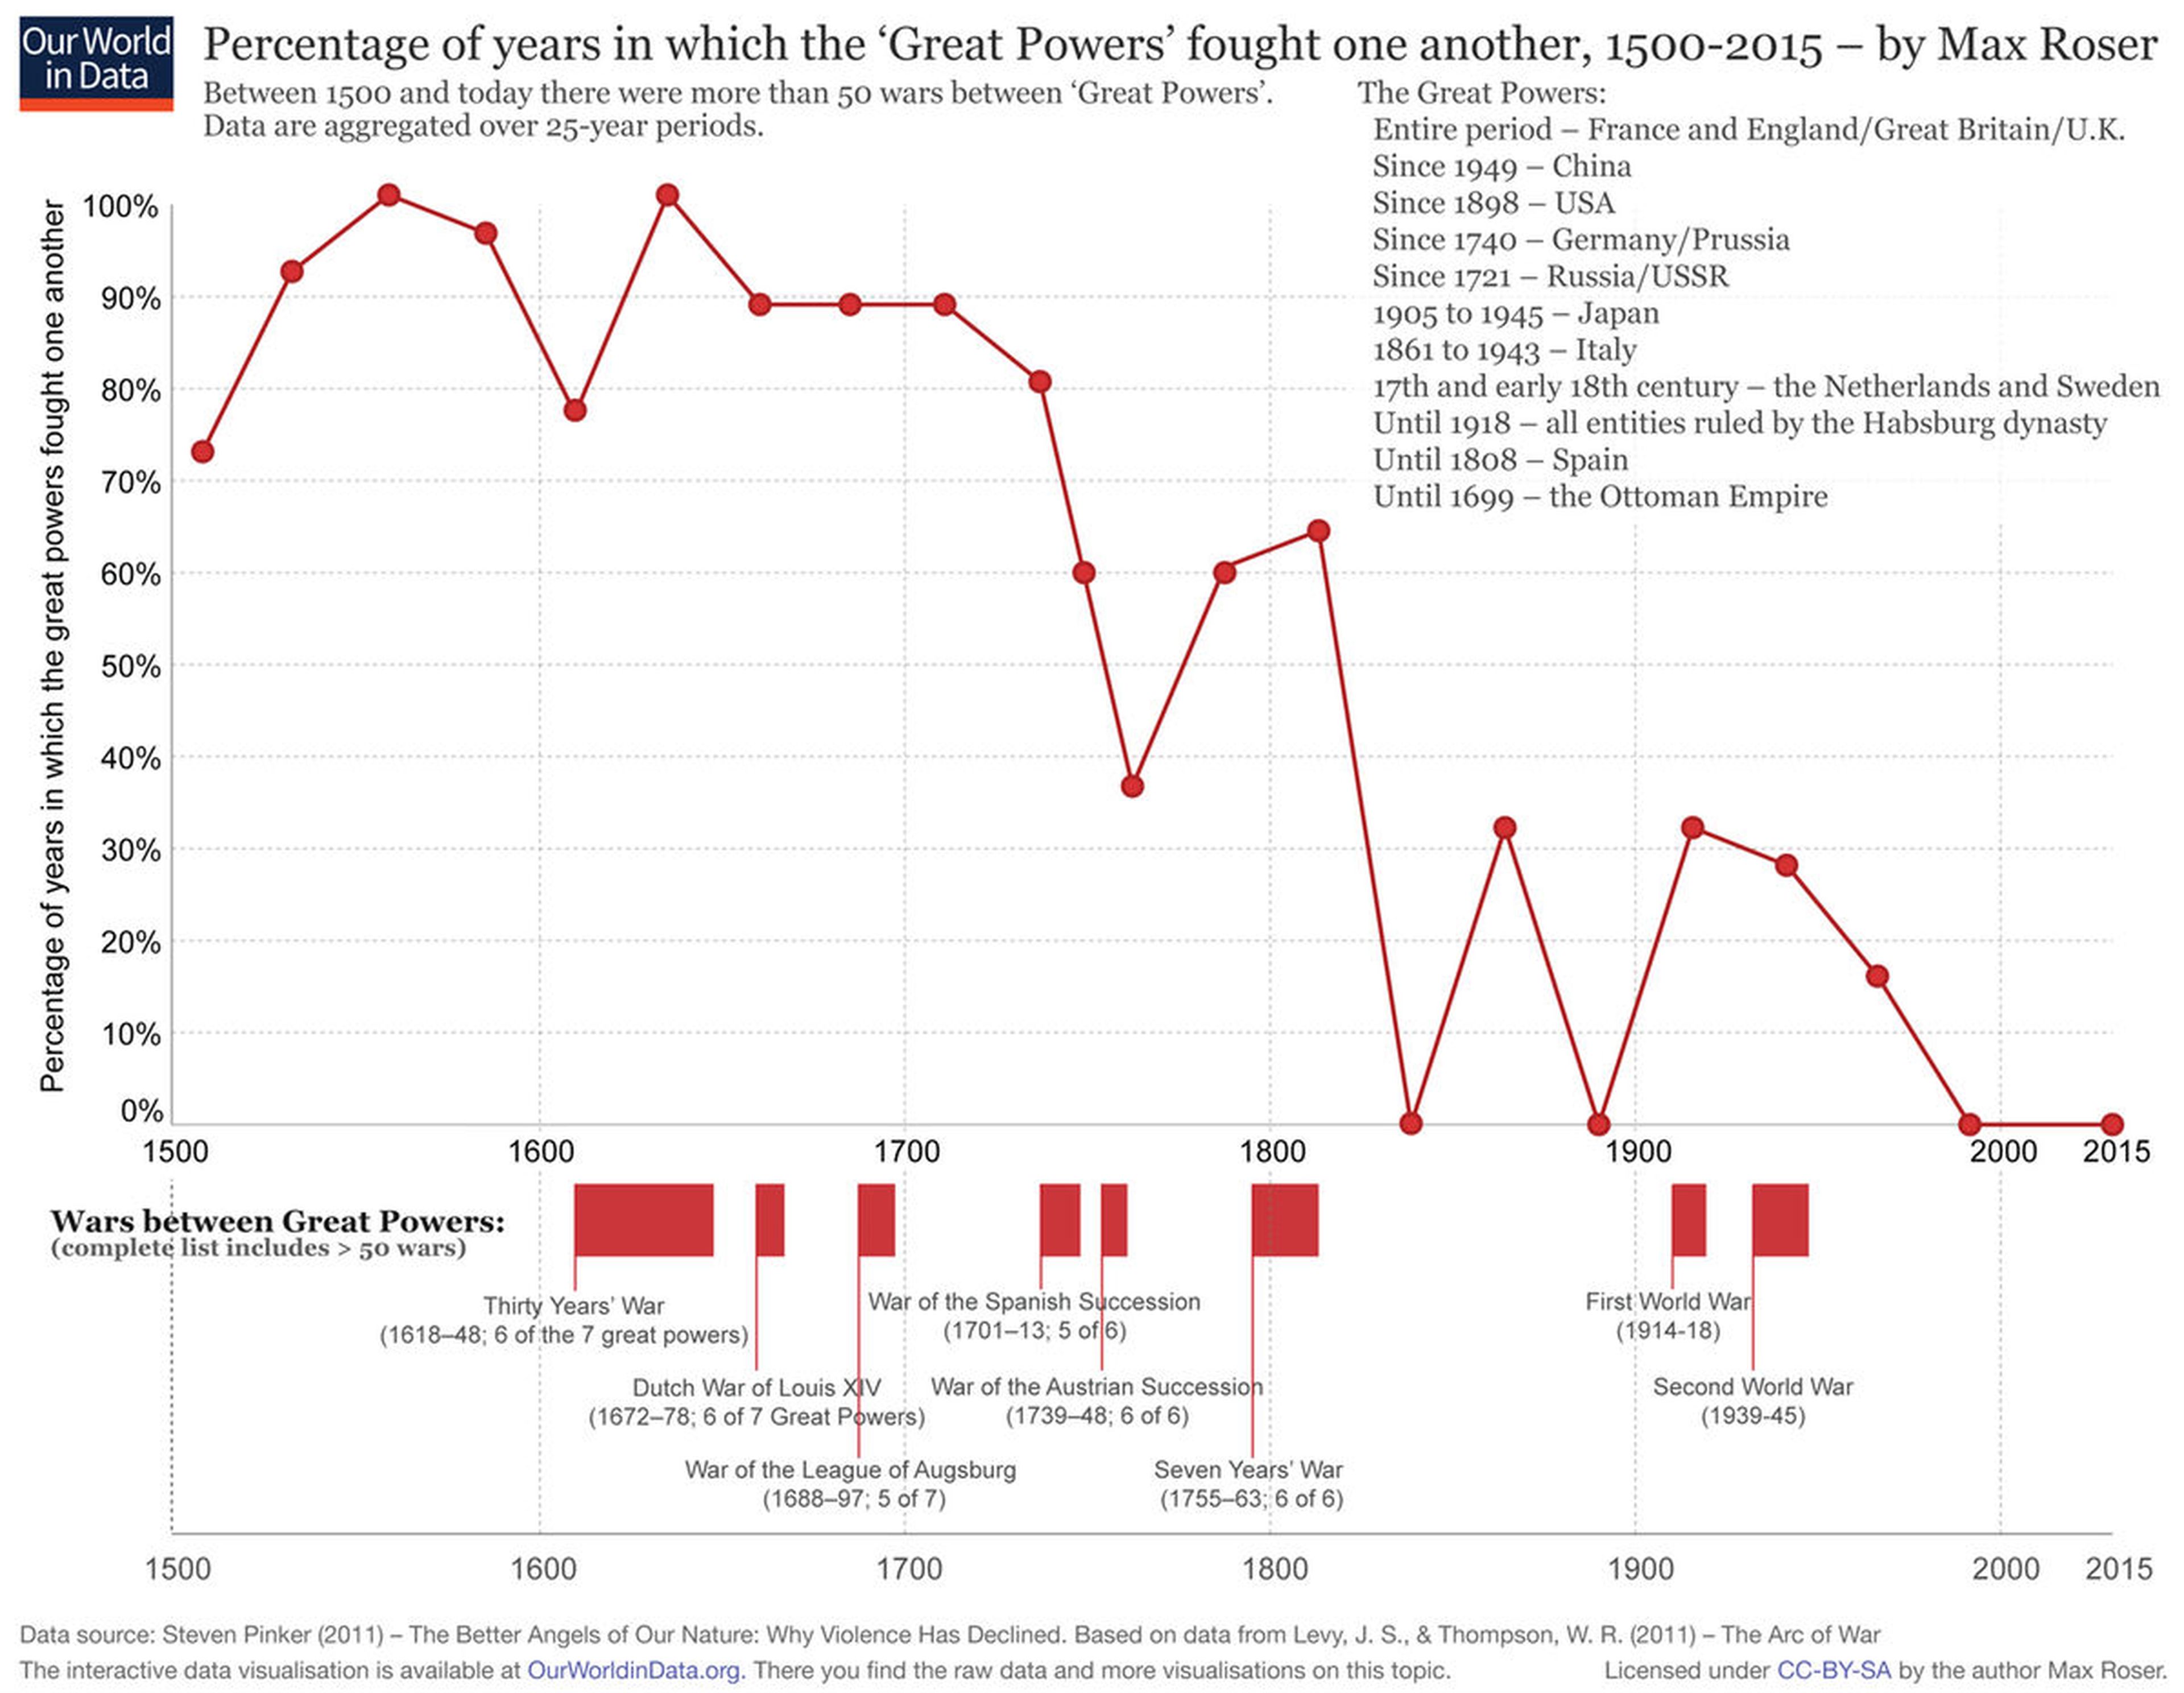 Porcentaje de tiempo en que las Grandes Potencias lucharon entre sí entre 1500 y 2015.